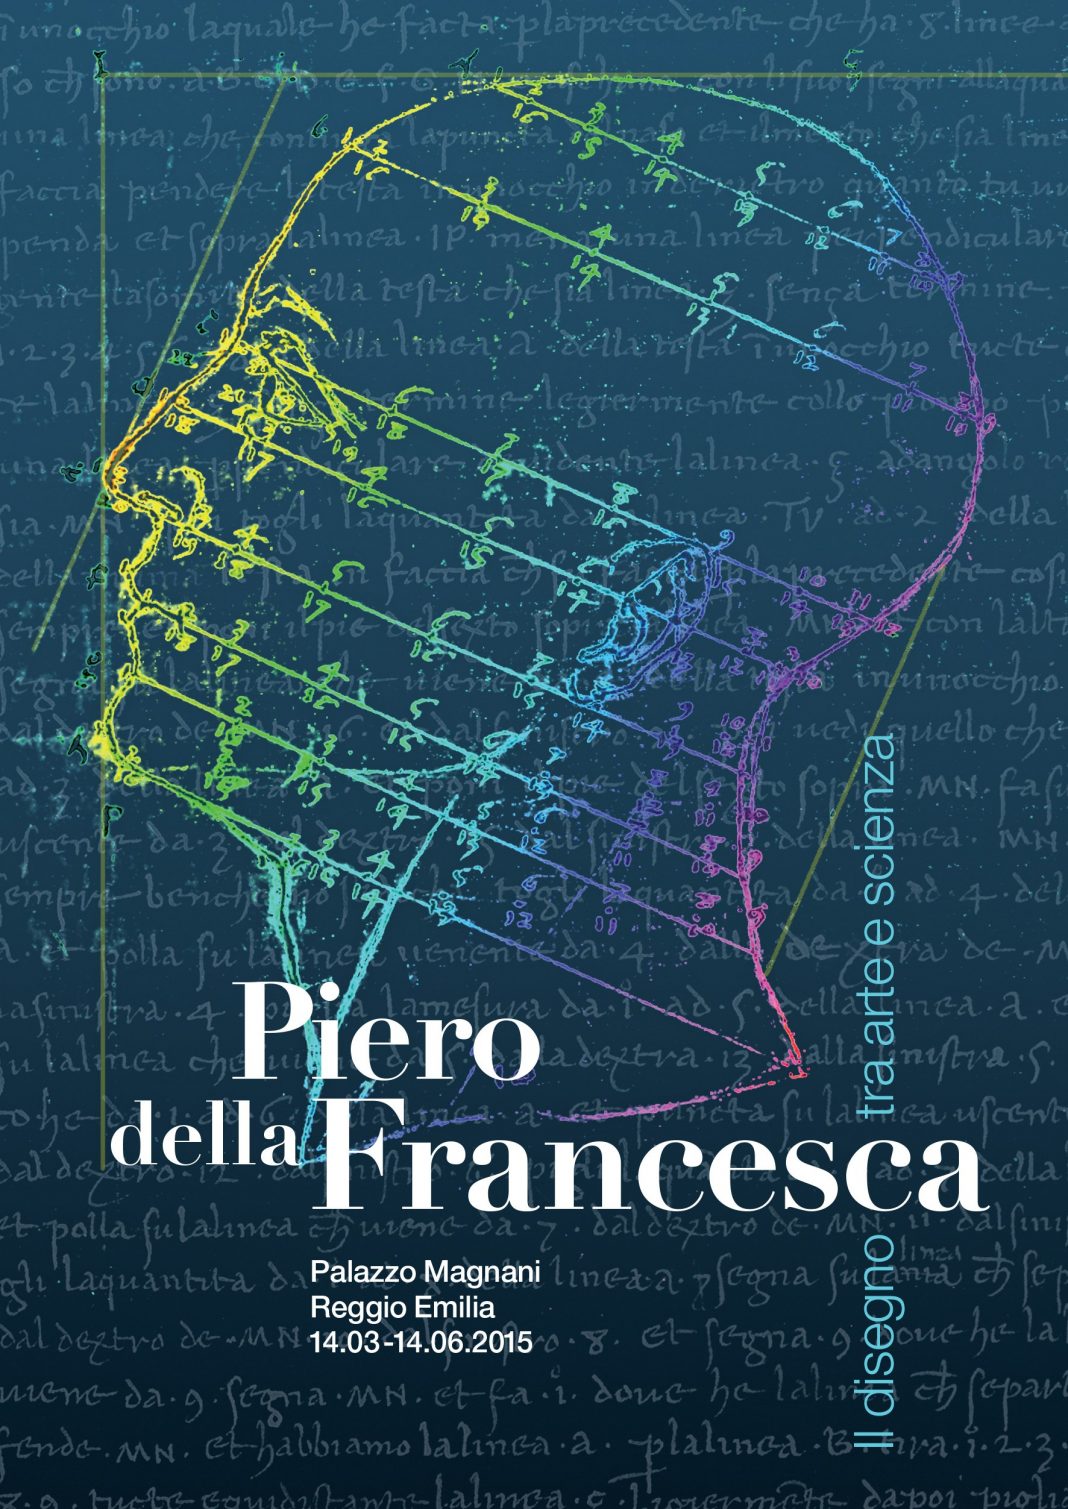 Piero della Francesca – Il disegno tra arte e scienzahttps://www.exibart.com/repository/media/eventi/2015/03/piero-della-francesca-8211-il-disegno-tra-arte-e-scienza-1068x1509.jpg